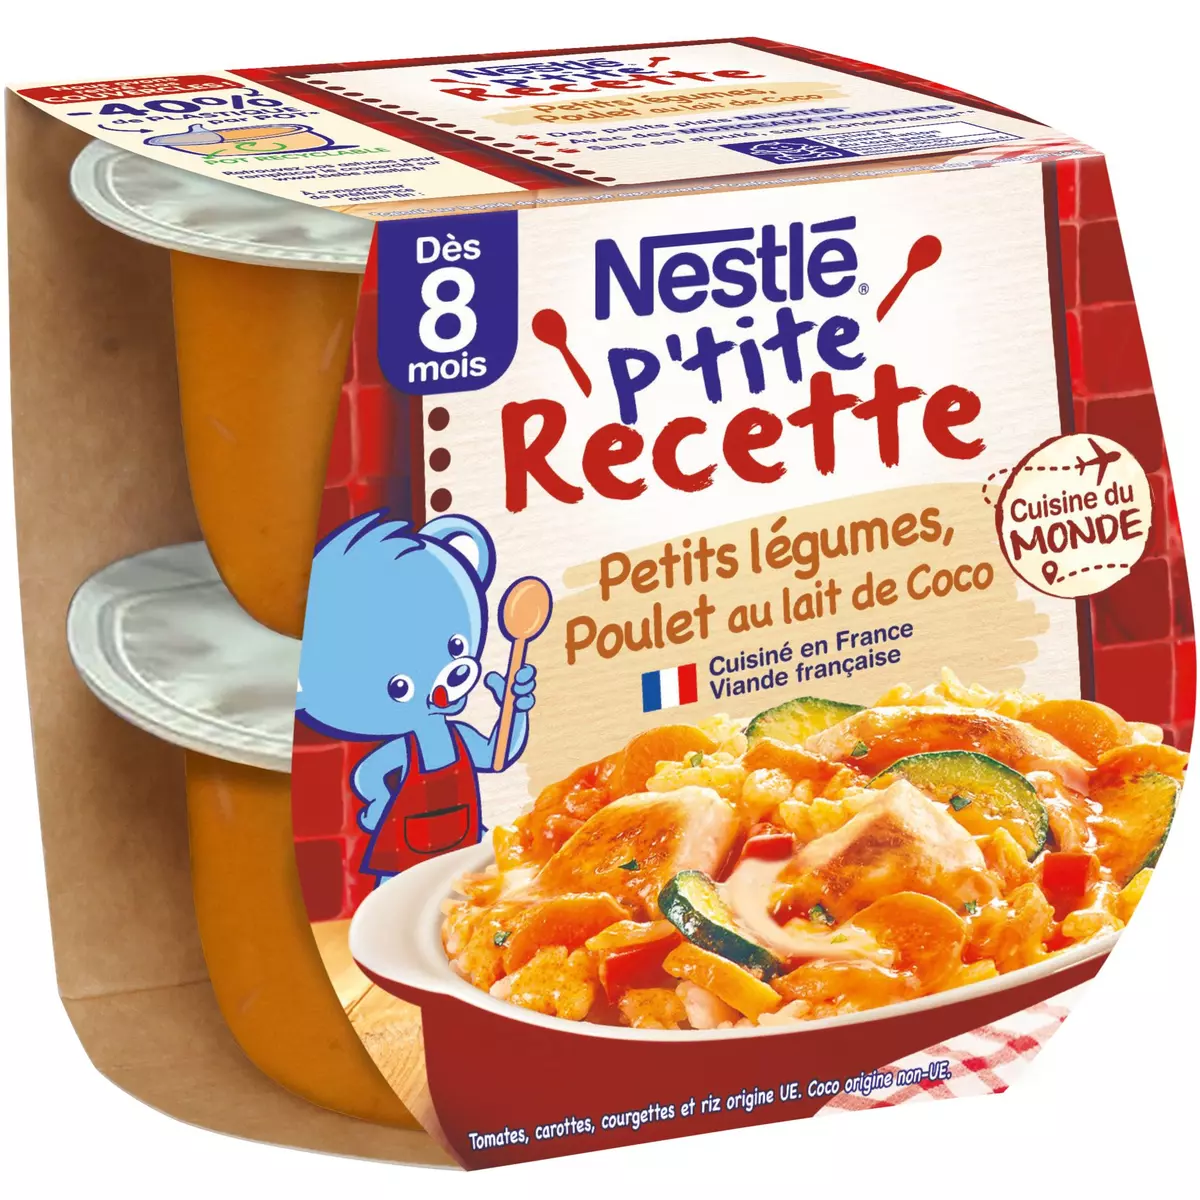 NESTLE P'tite recette bol petits légumes poulet au lait de coco dès 8 mois 2x200g